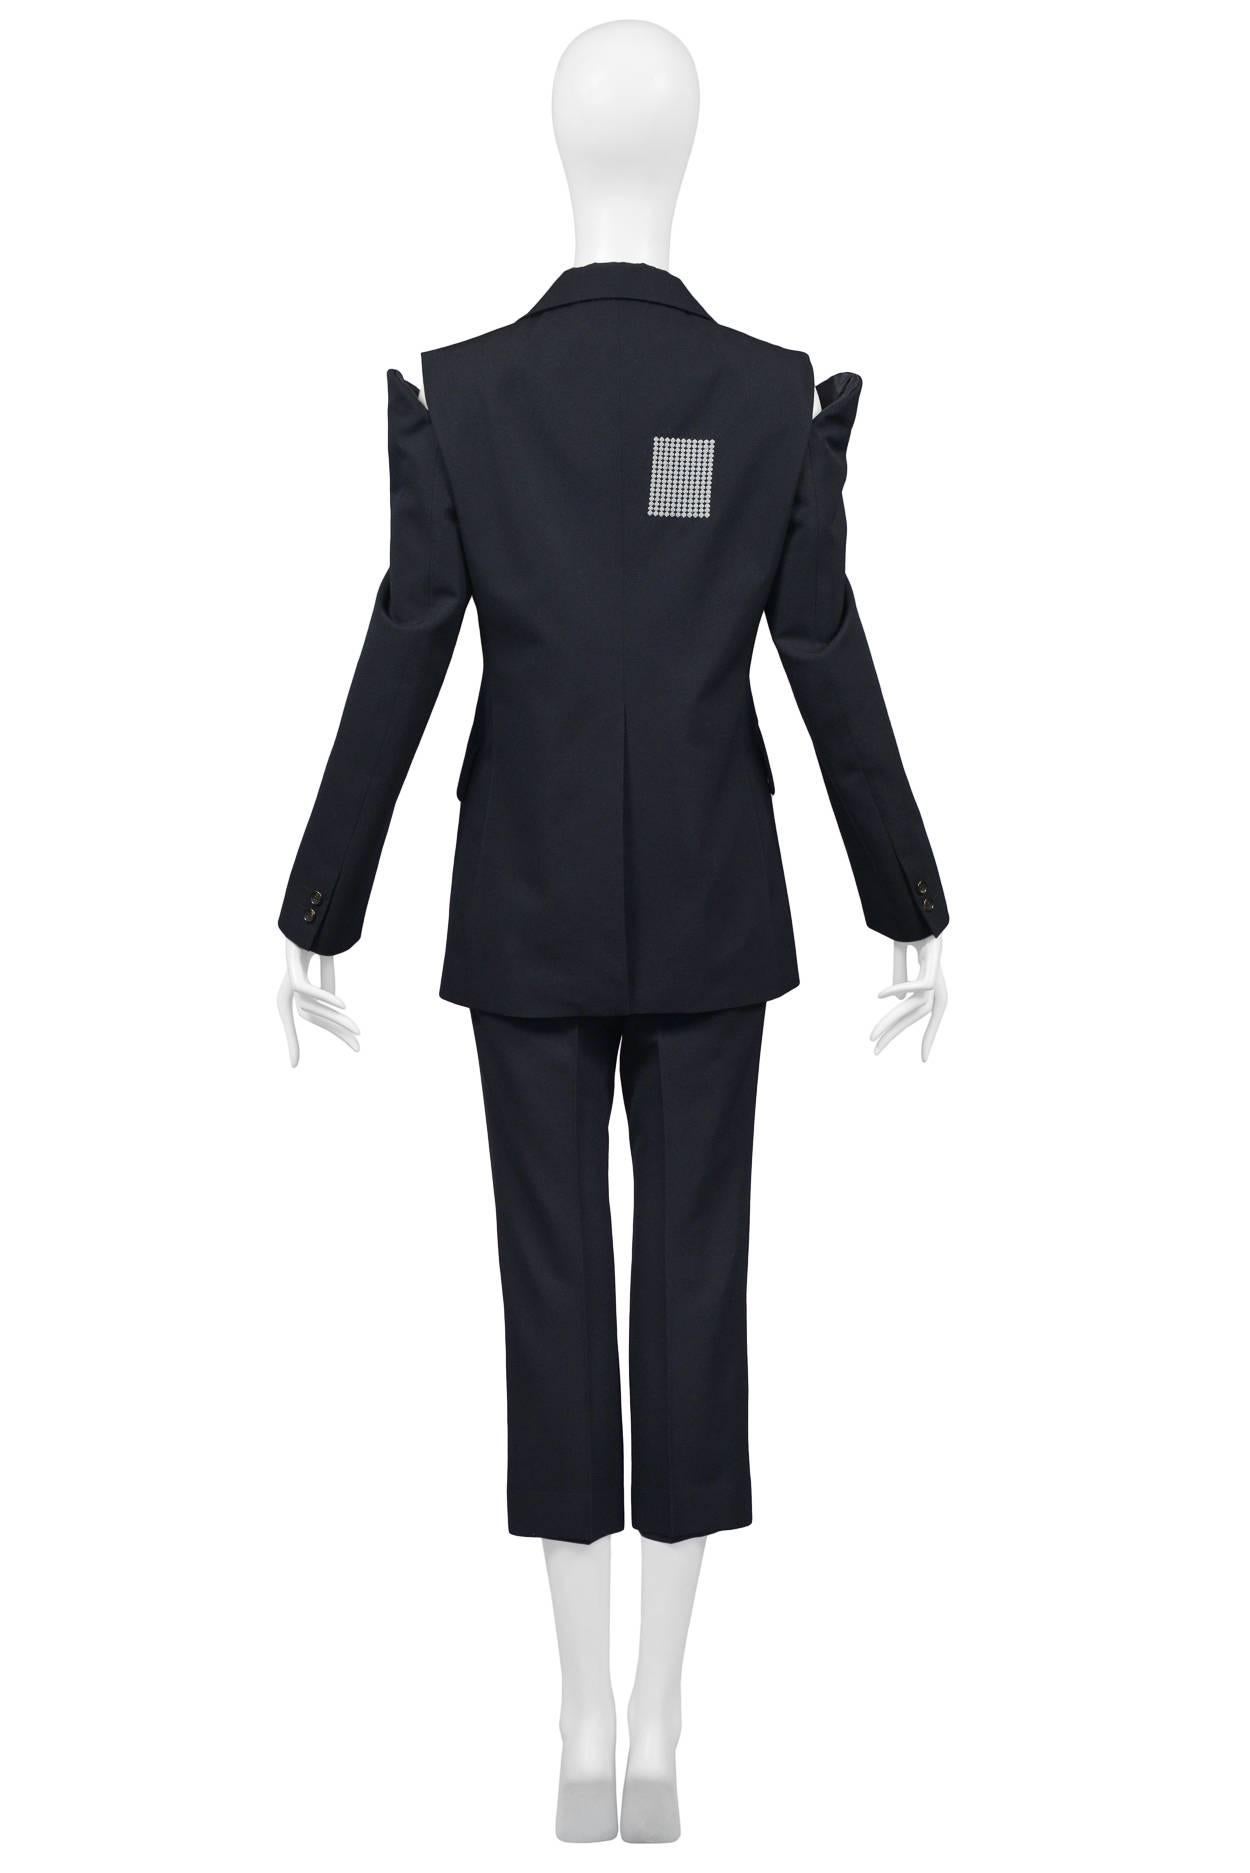 Women's Comme des Garcons Navy Blue Suit 2000